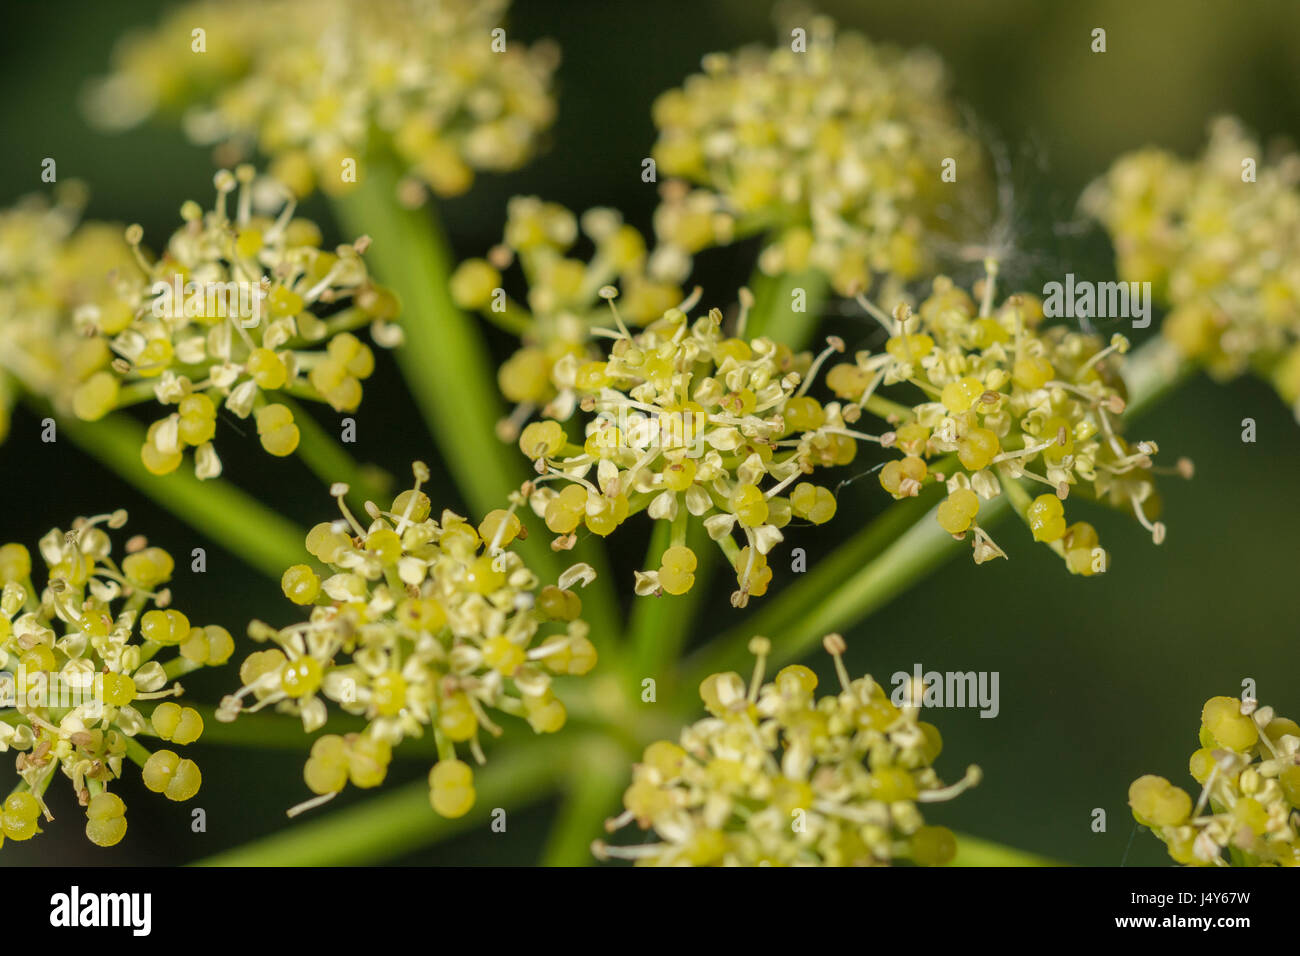 Fiori e flowerbuds dell'impianto Umbelliferous Alexanders / Smyrnium olusatrum - un foraged commestibili cibo, già coltivata come un vegetale. Foto Stock